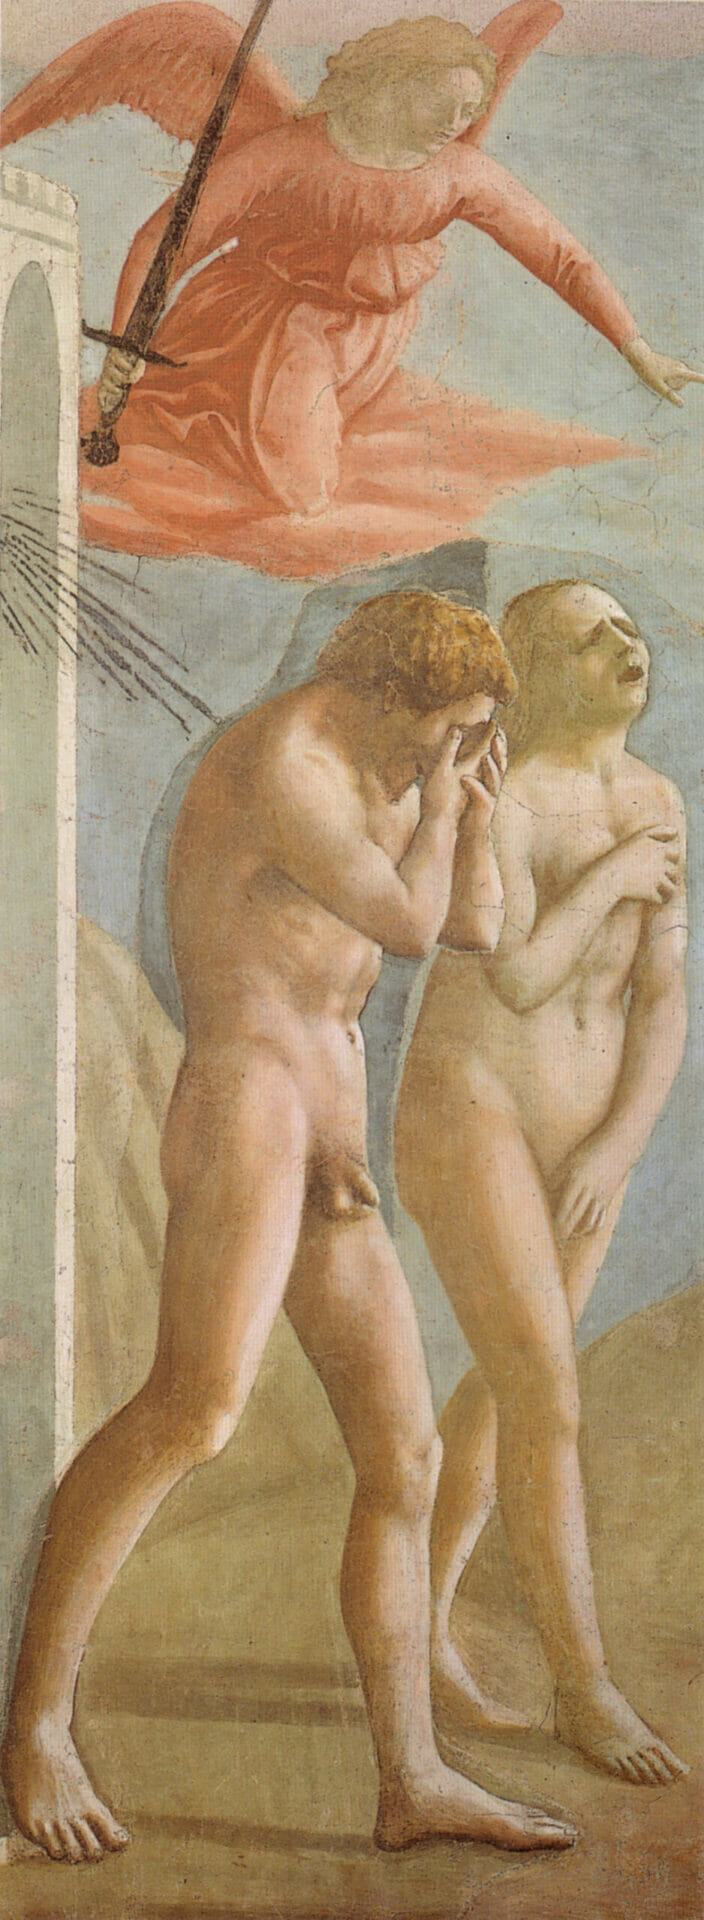 Masaccio, Expulsion from Paradise